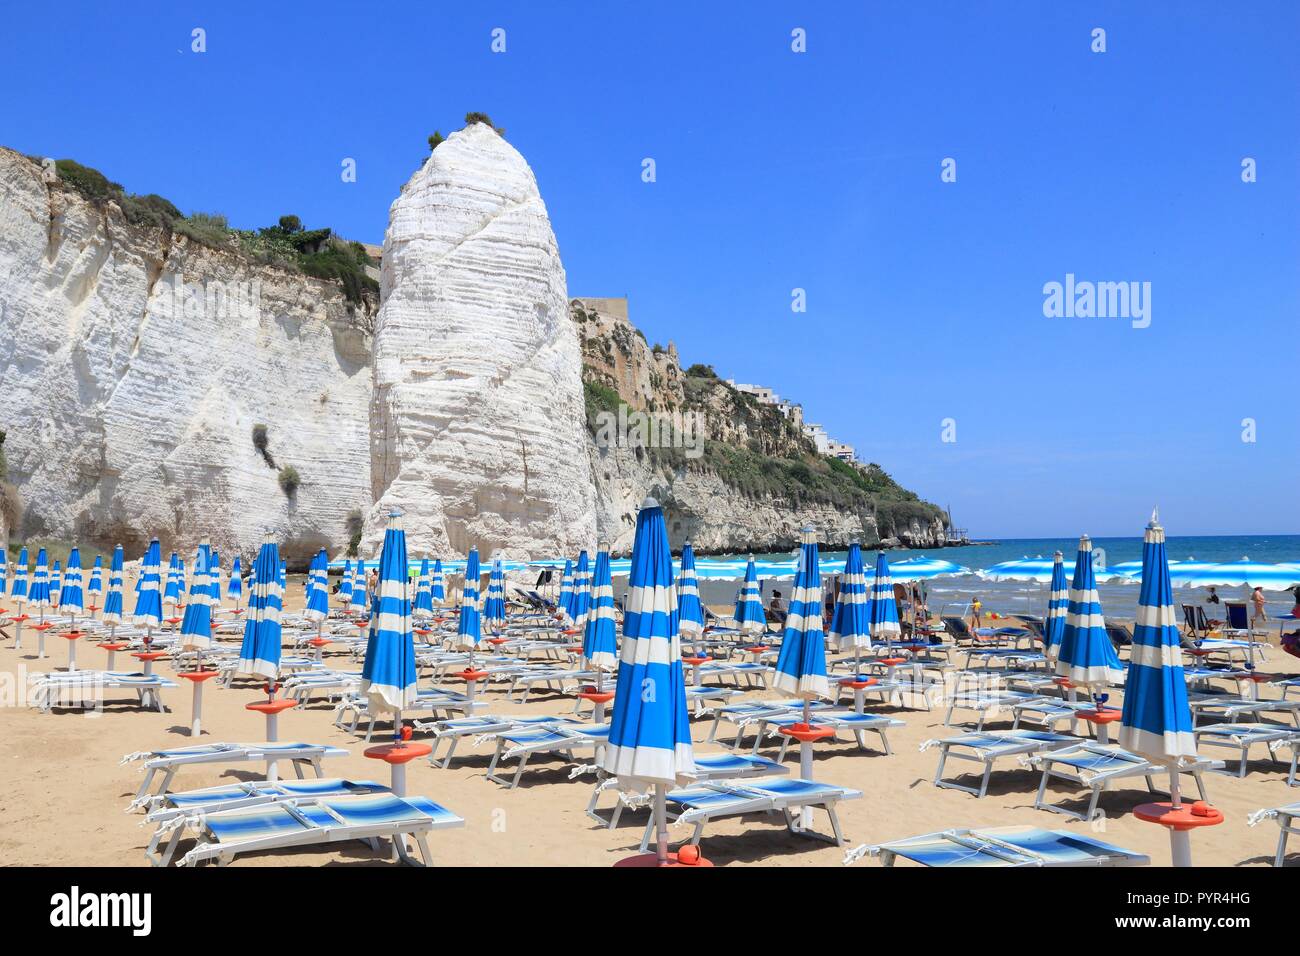 Nationalpark Gargano in Italien - Pizzomunno Strand in Vieste. Stockfoto